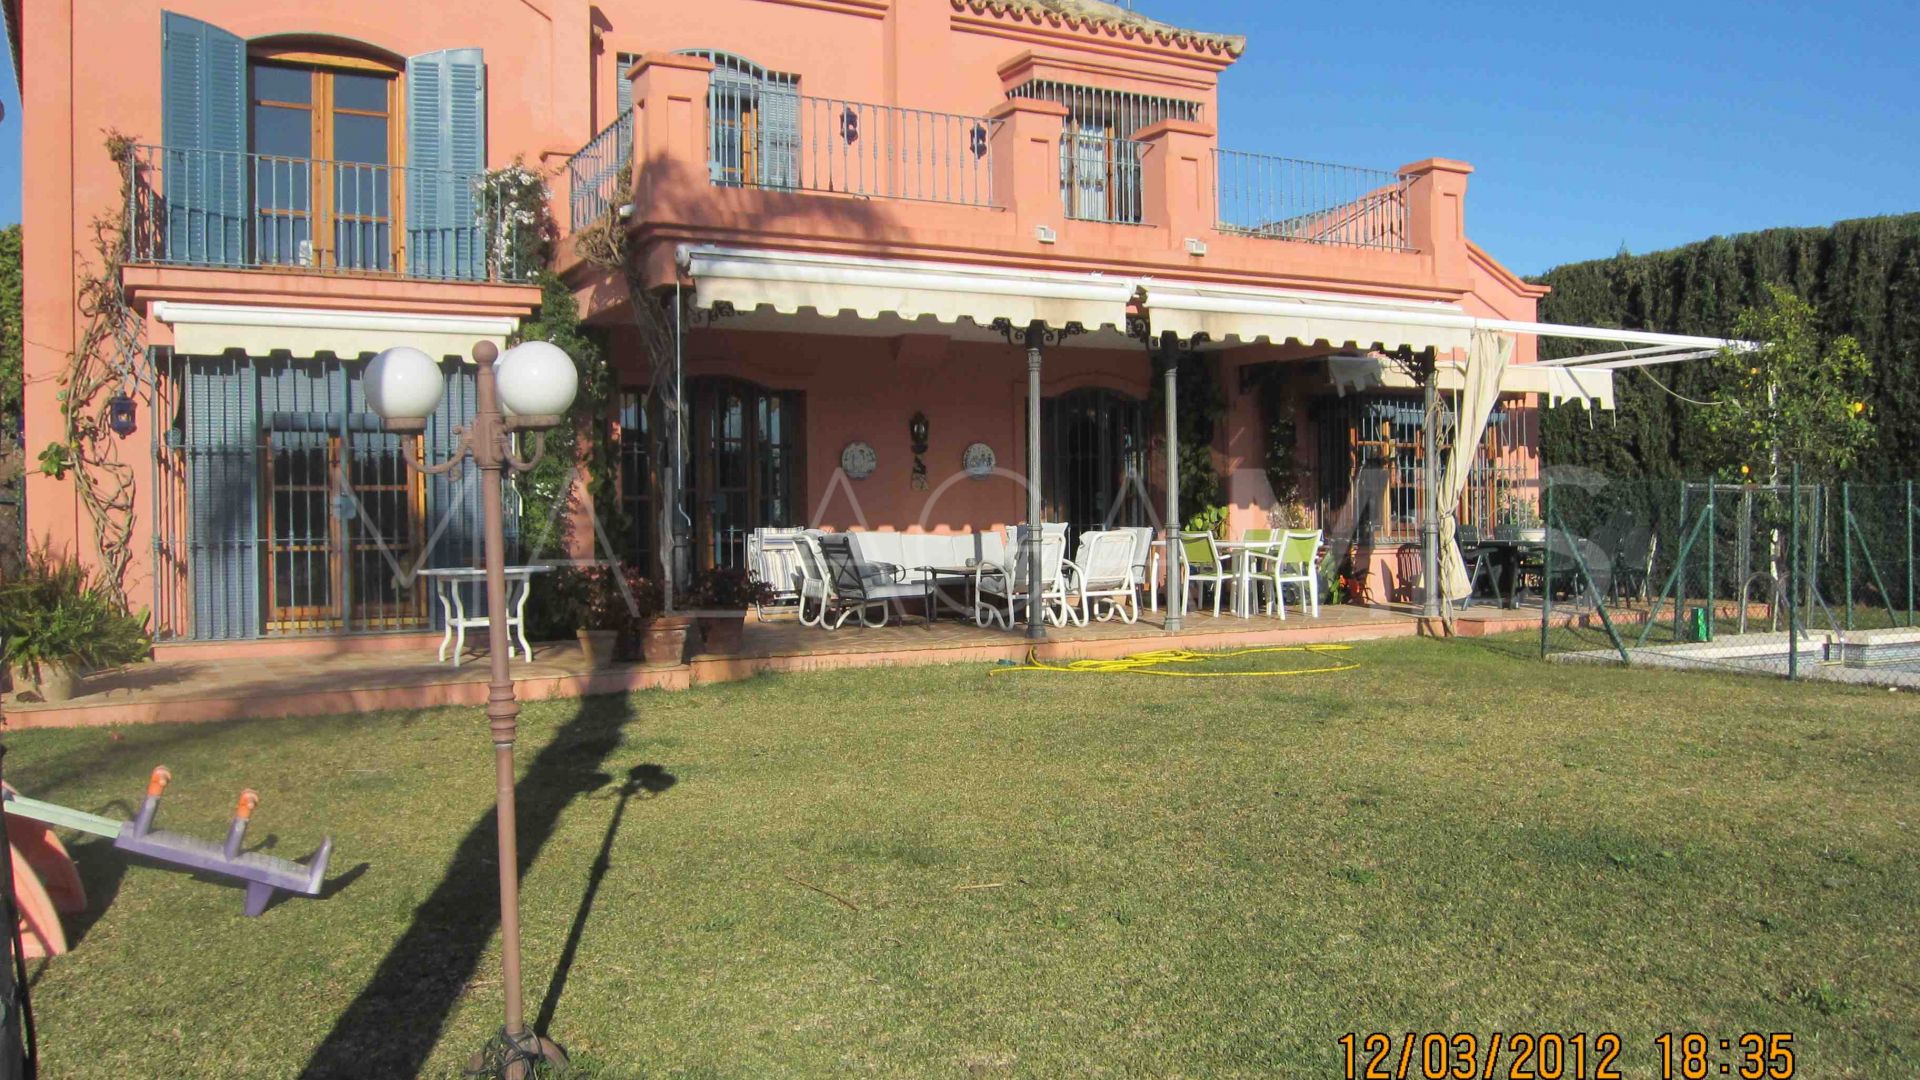 Buy villa in Marbella Centro